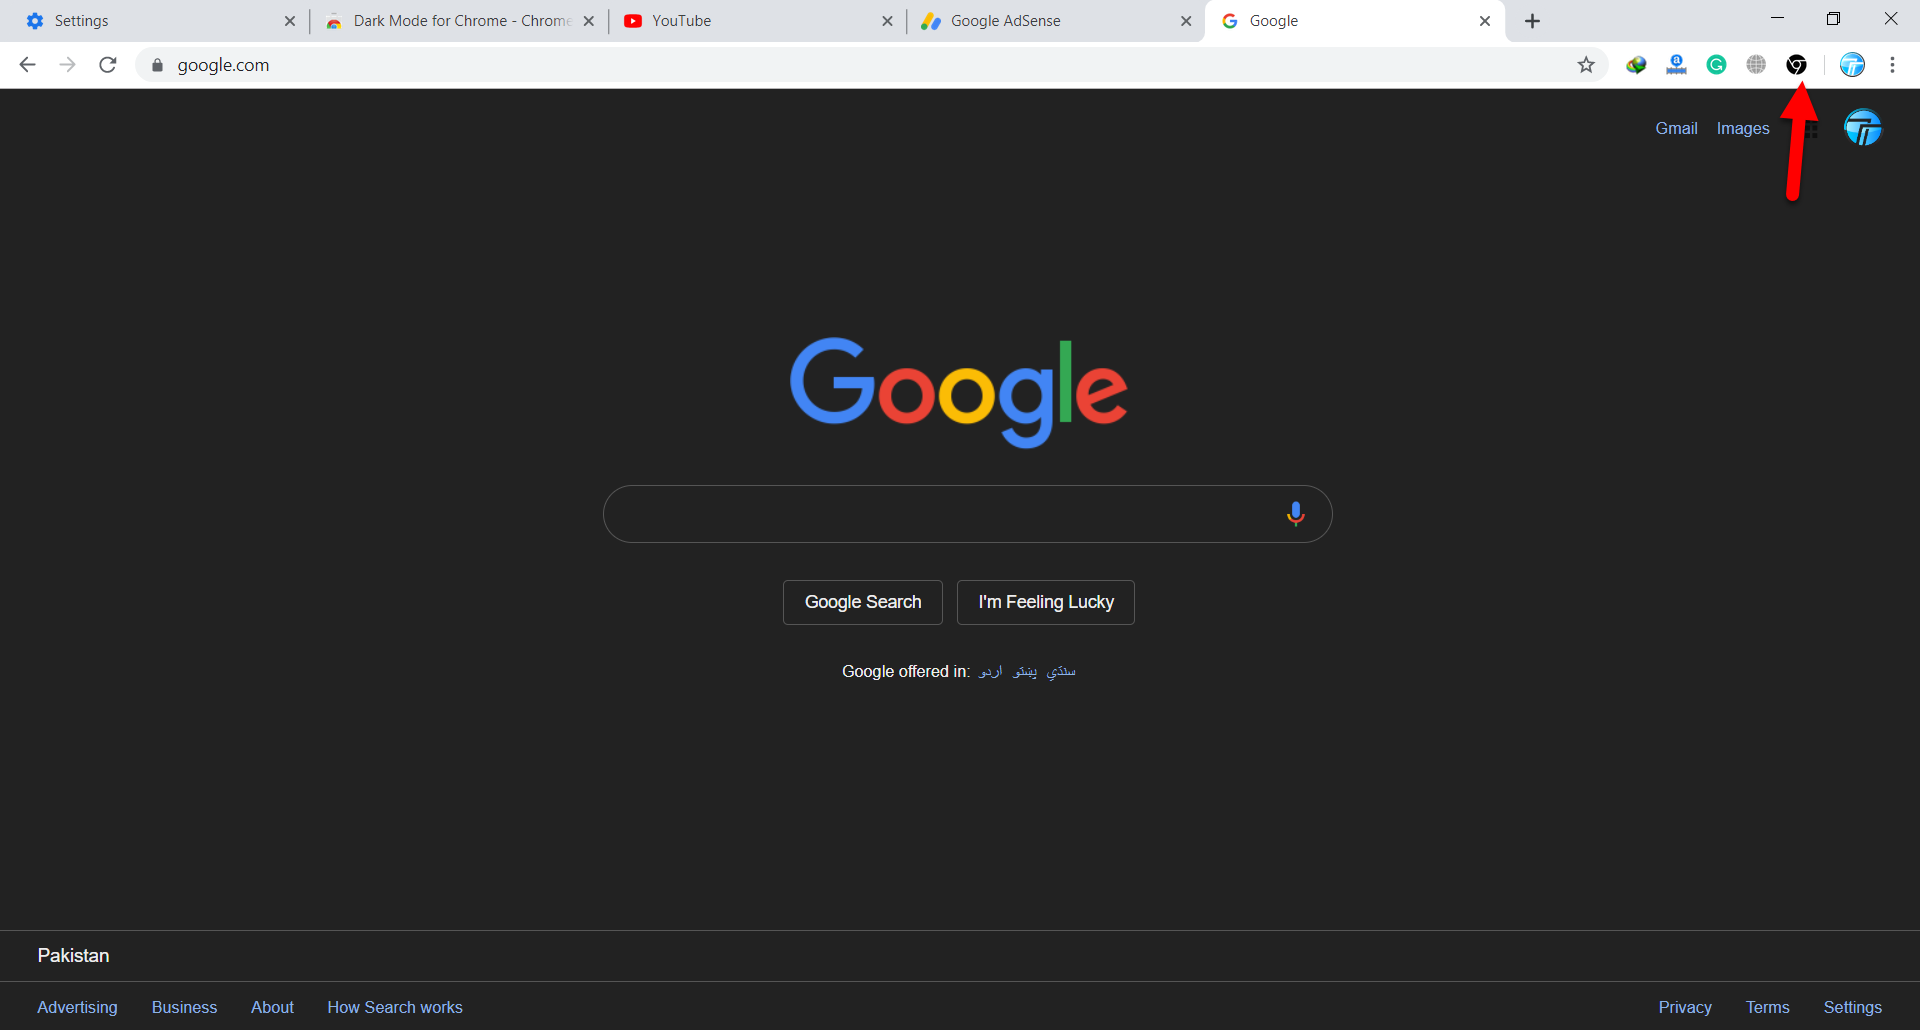 google chrome dark mode disable